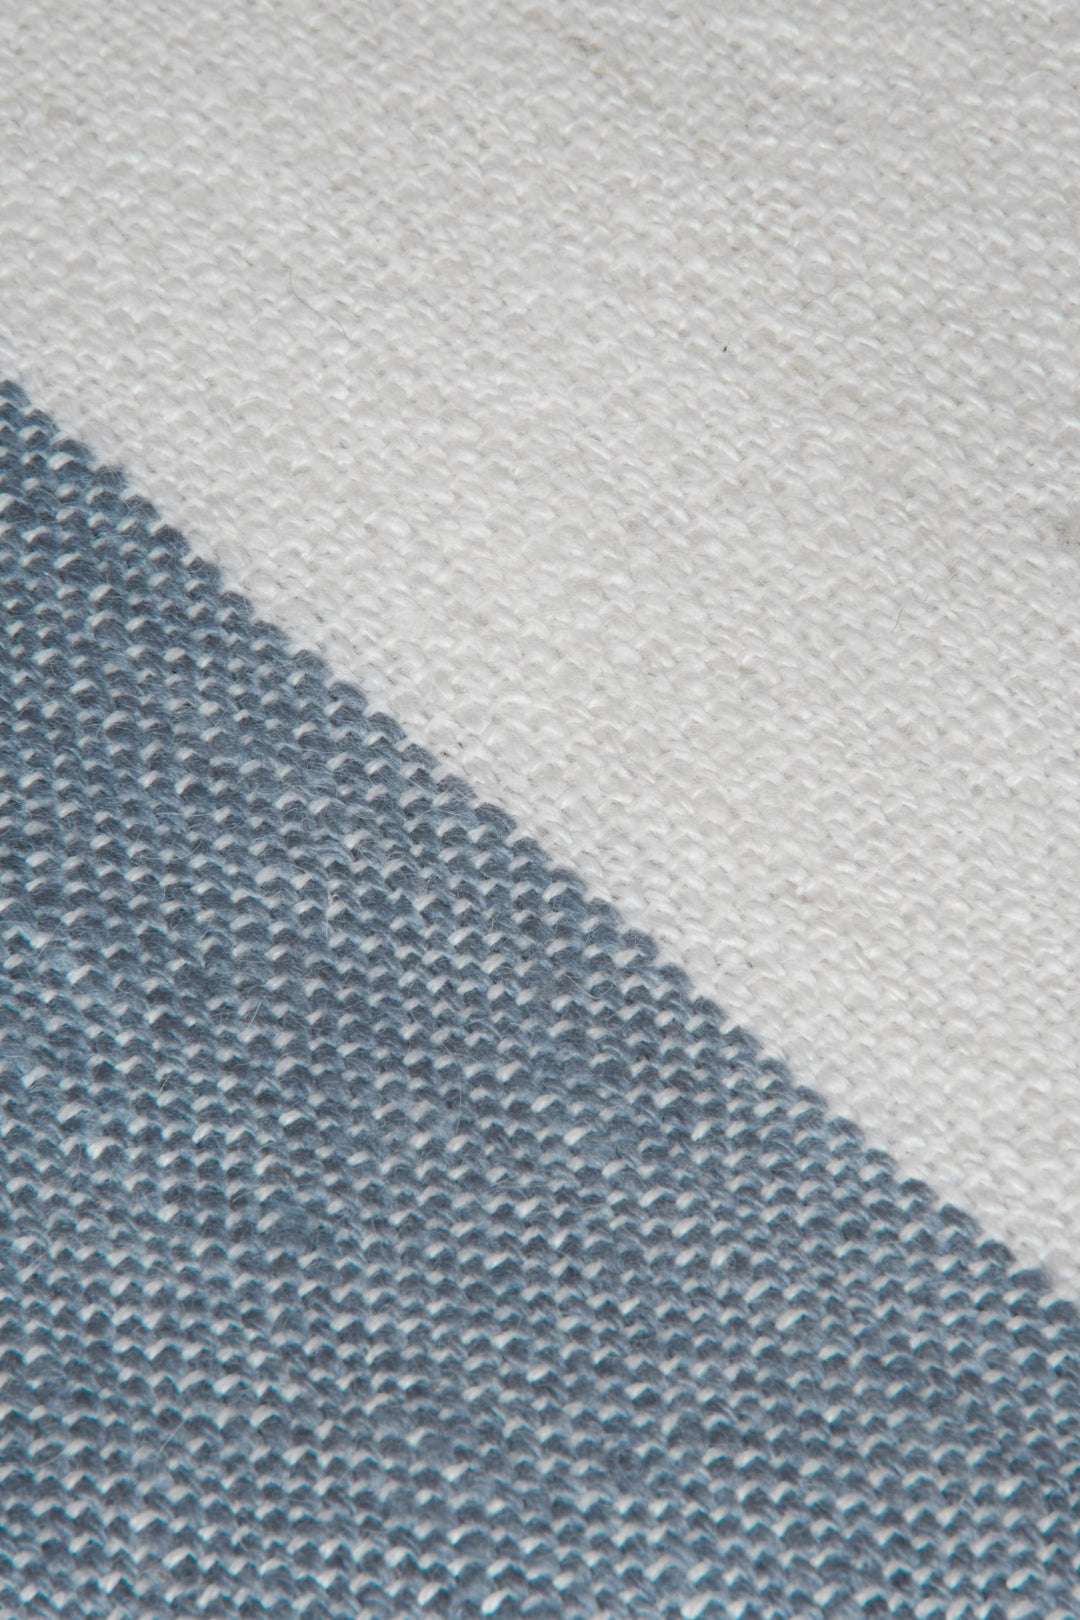 Weißer und blauer Schal aus Alpaka Wolle mit Streifenmuster, Nahaufnahme